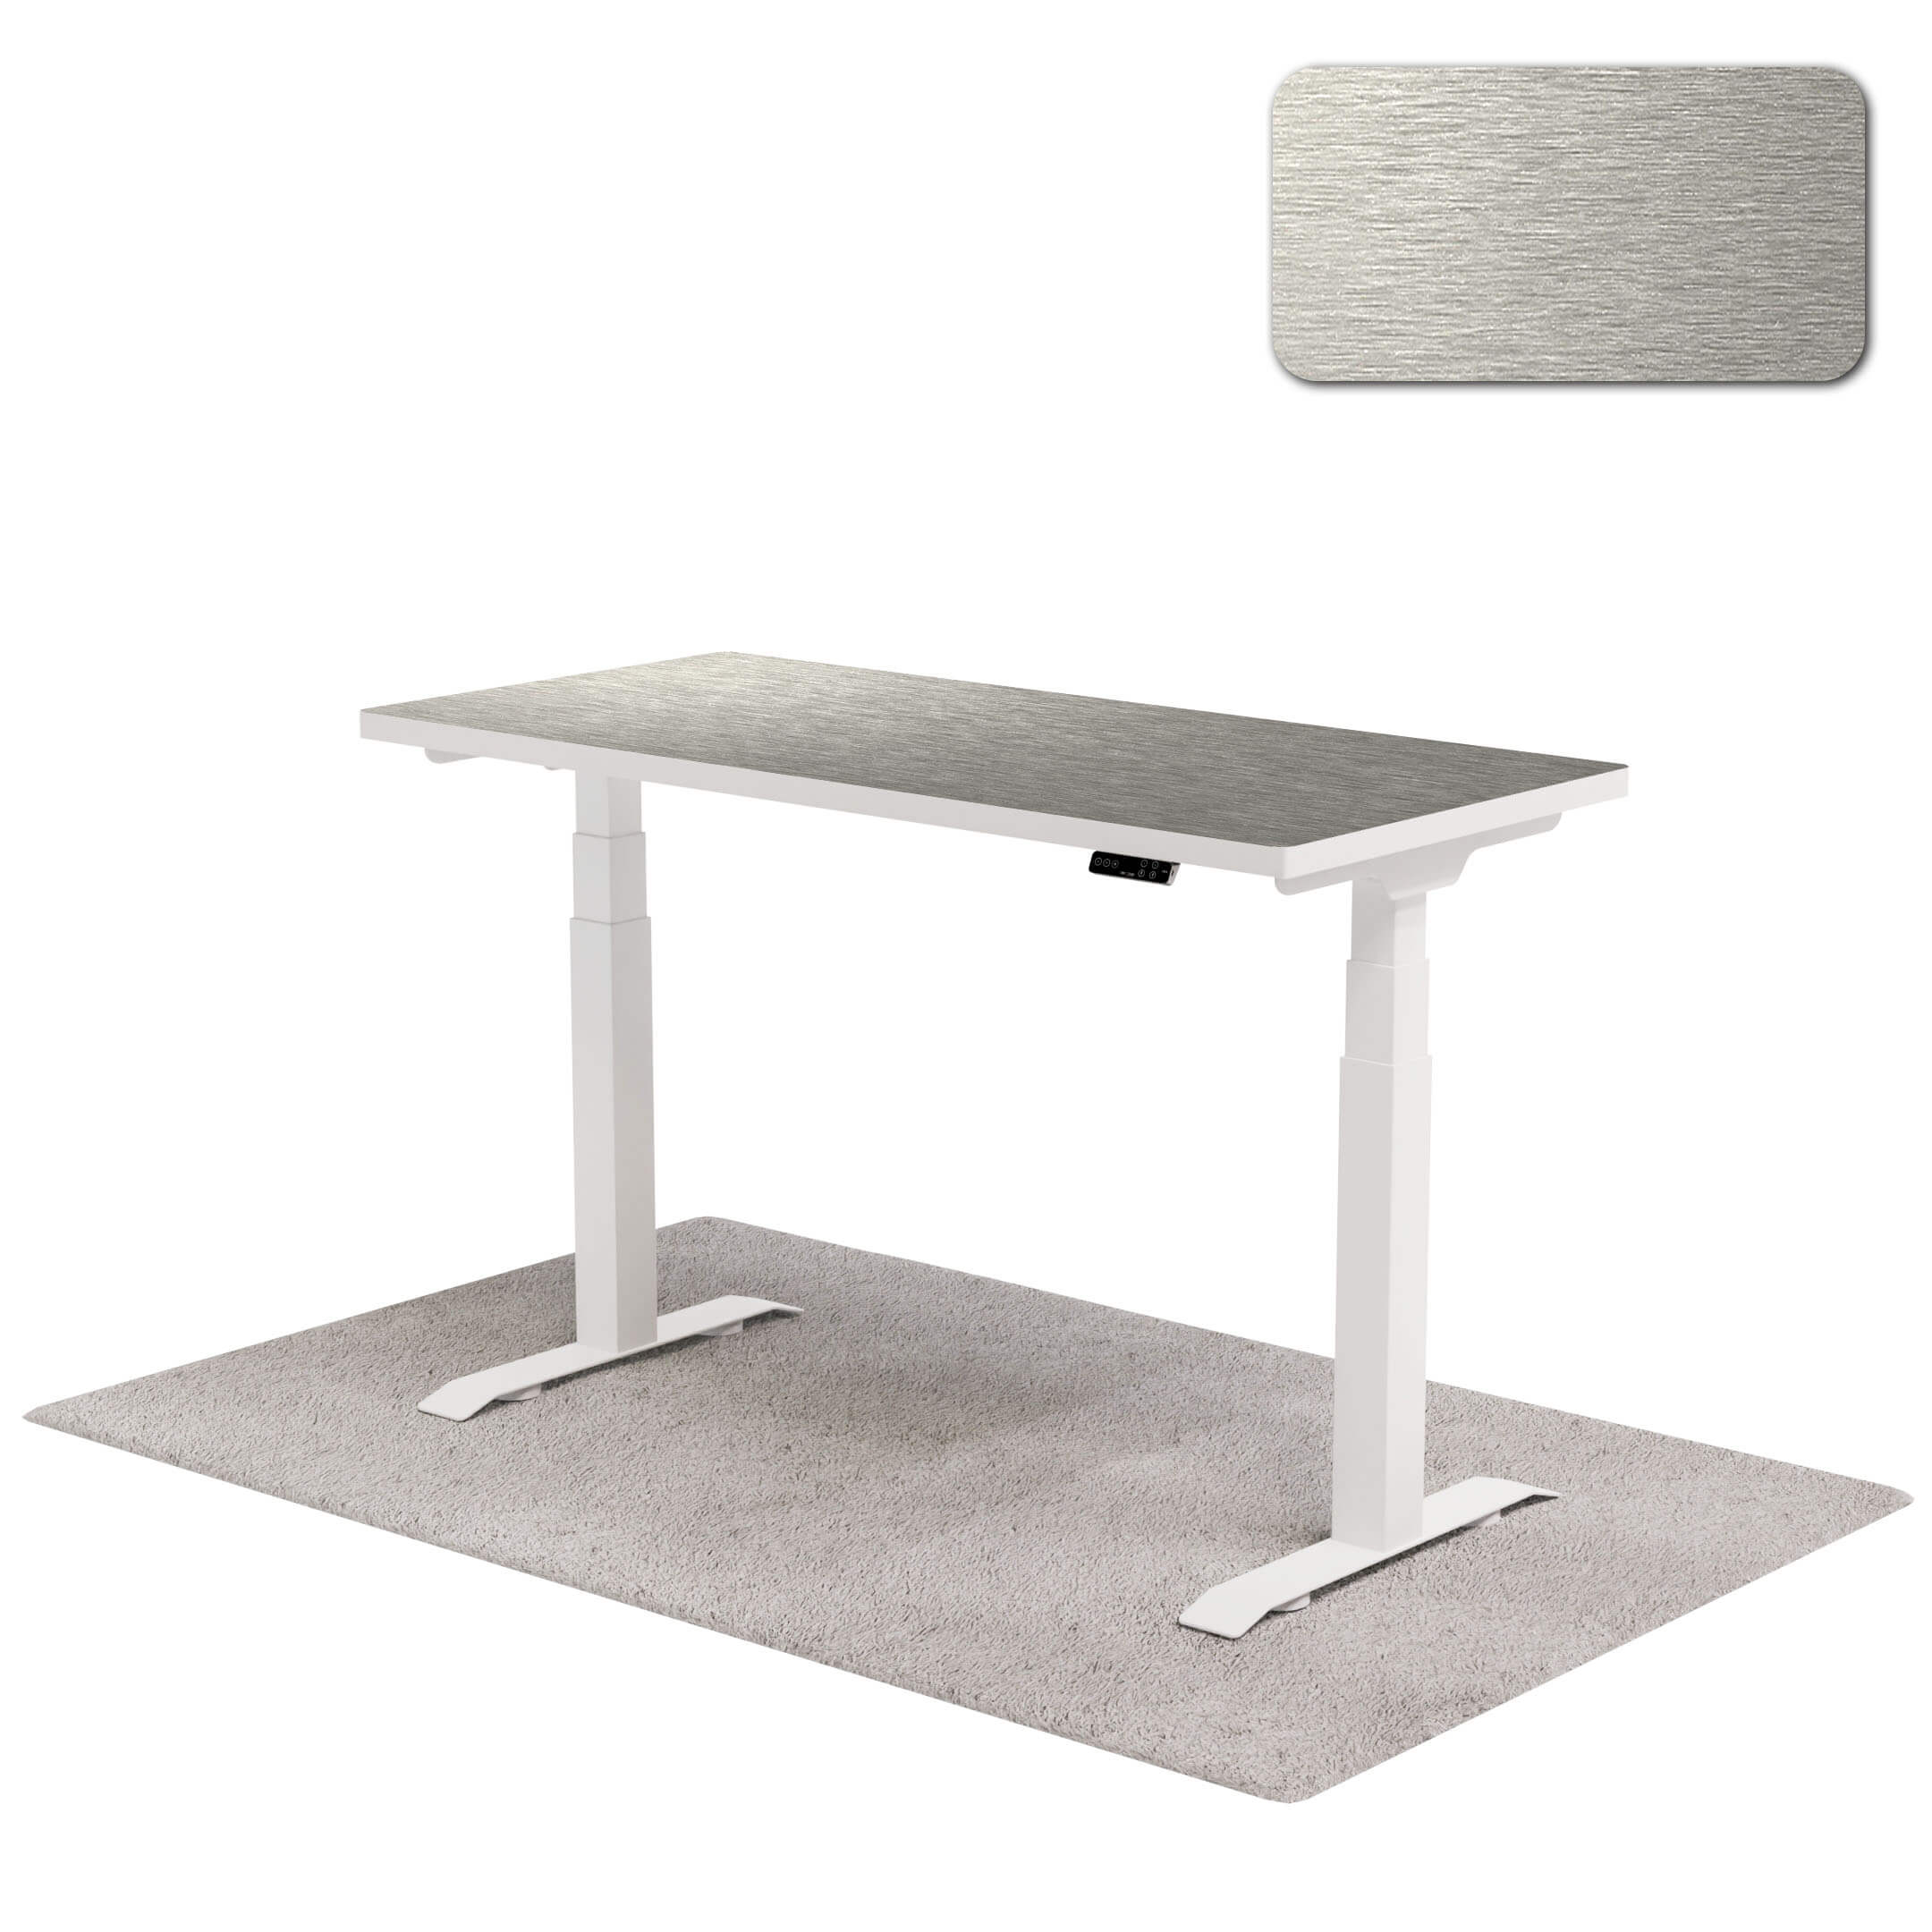 Luxurious one desk white legs motor frame home desk Titanium - KAS 995 → ODLS002 sg dealer showroom